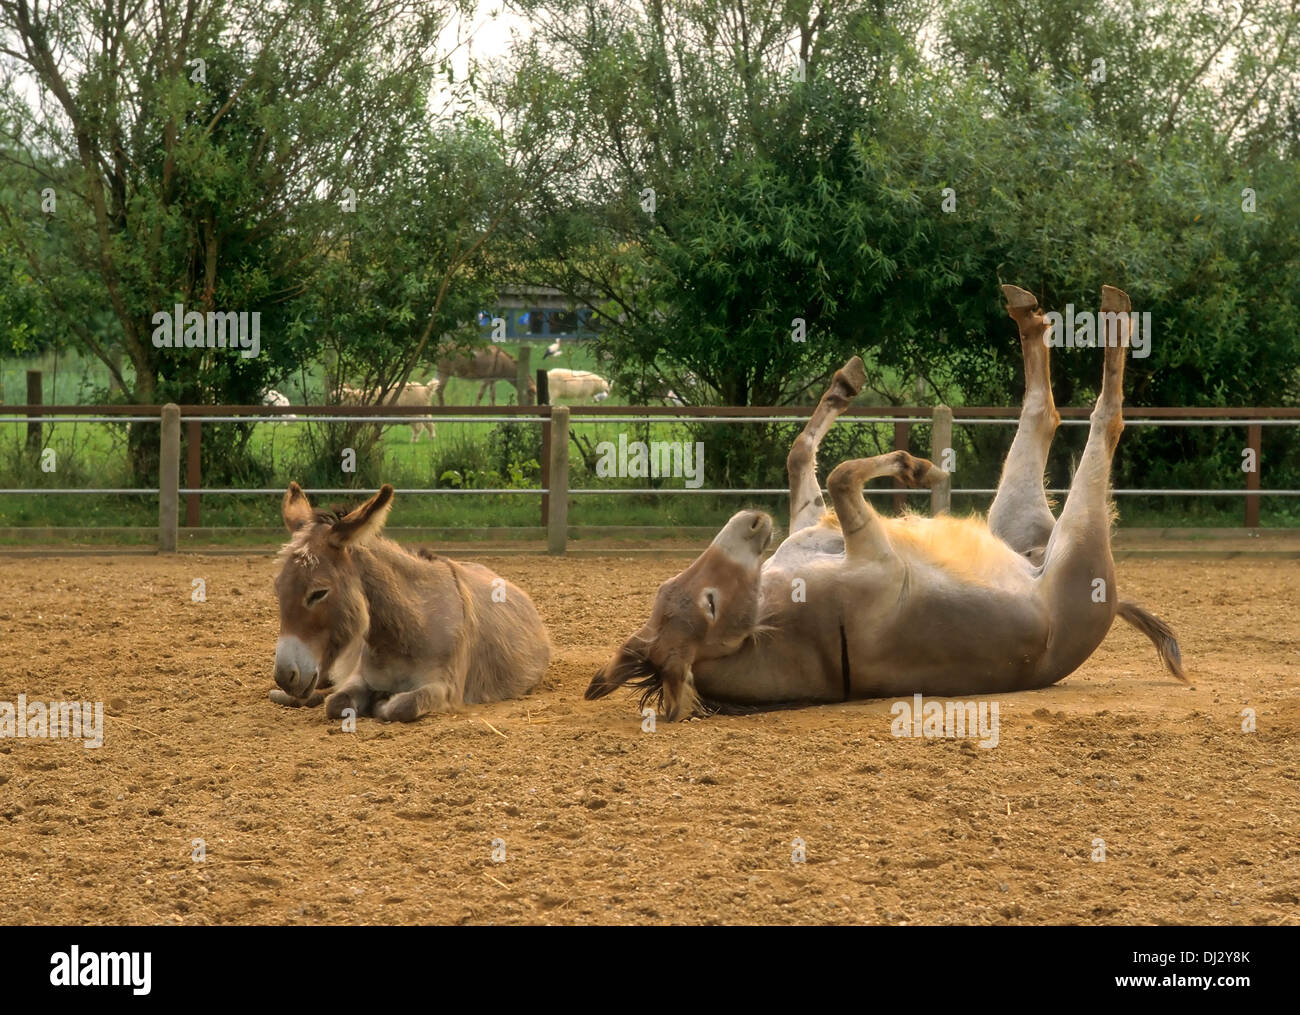 miniature donkeys, paddock, donkey dust bath in the coupling, Esel, Zwergesel, in der Koppel, Esel Staubbad, in der Koppel, Stock Photo